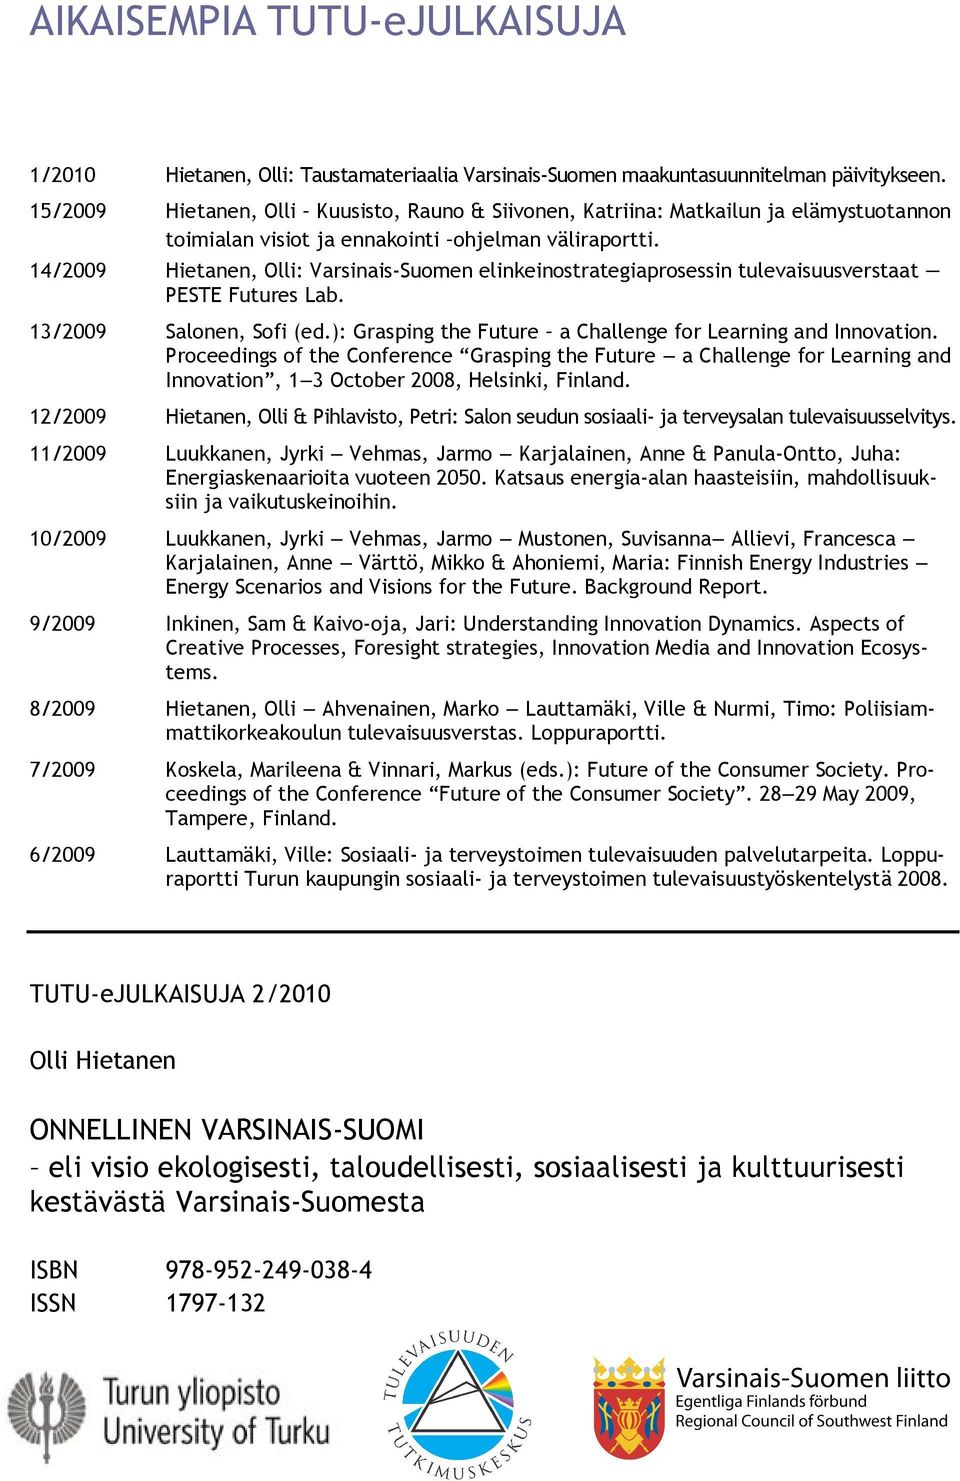 14/2009 Hietanen, Olli: Varsinais Suomen elinkeinostrategiaprosessin tulevaisuusverstaat PESTE Futures Lab. 13/2009 Salonen, Sofi (ed.): Grasping the Future a Challenge for Learning and Innovation.